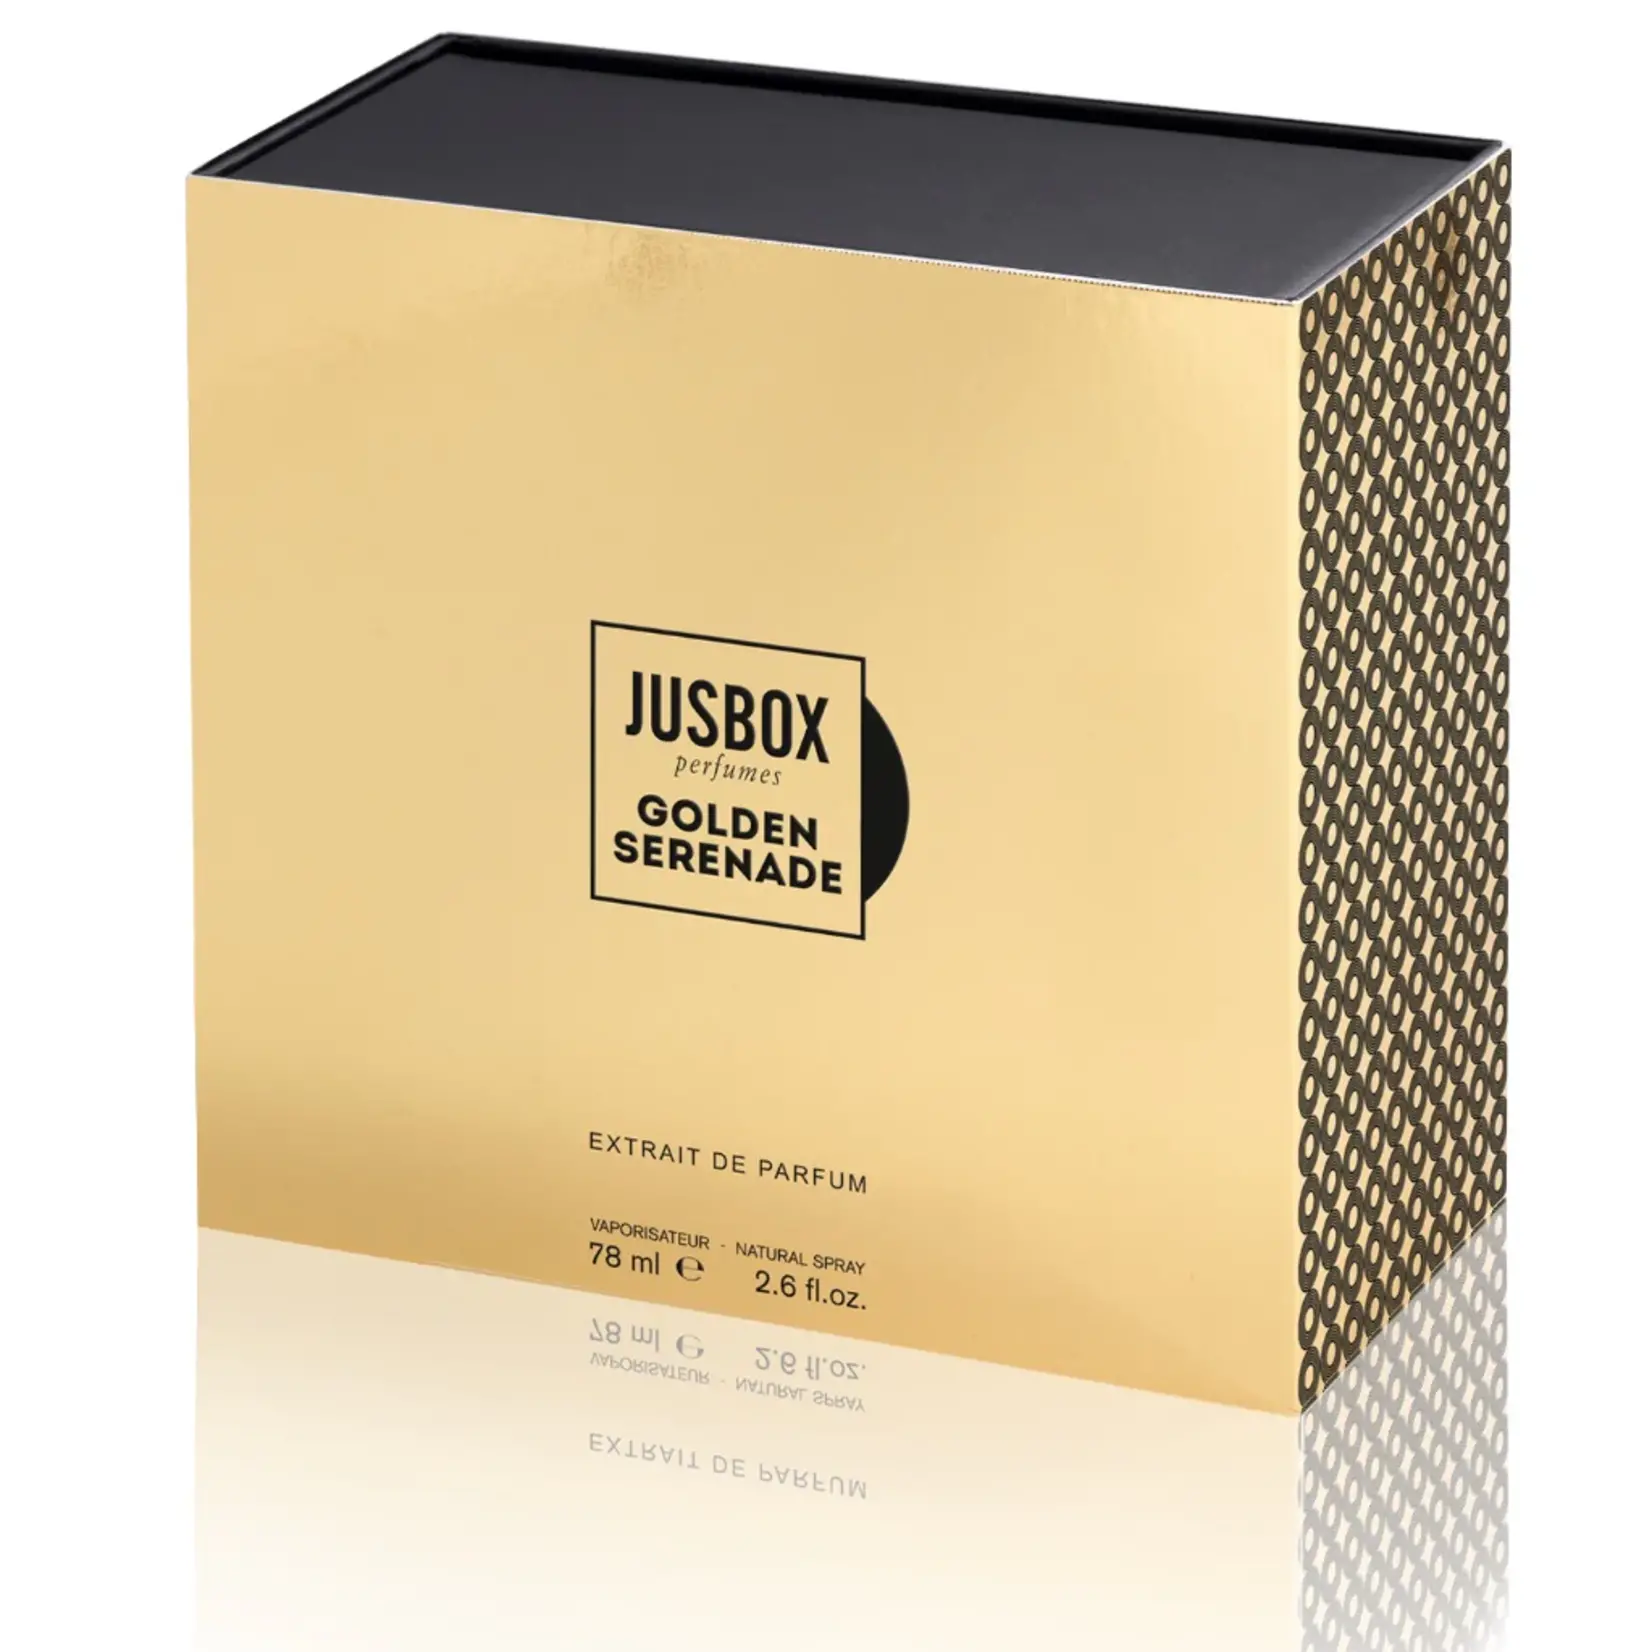 Jusbox perfumes Jusbox golden serenade